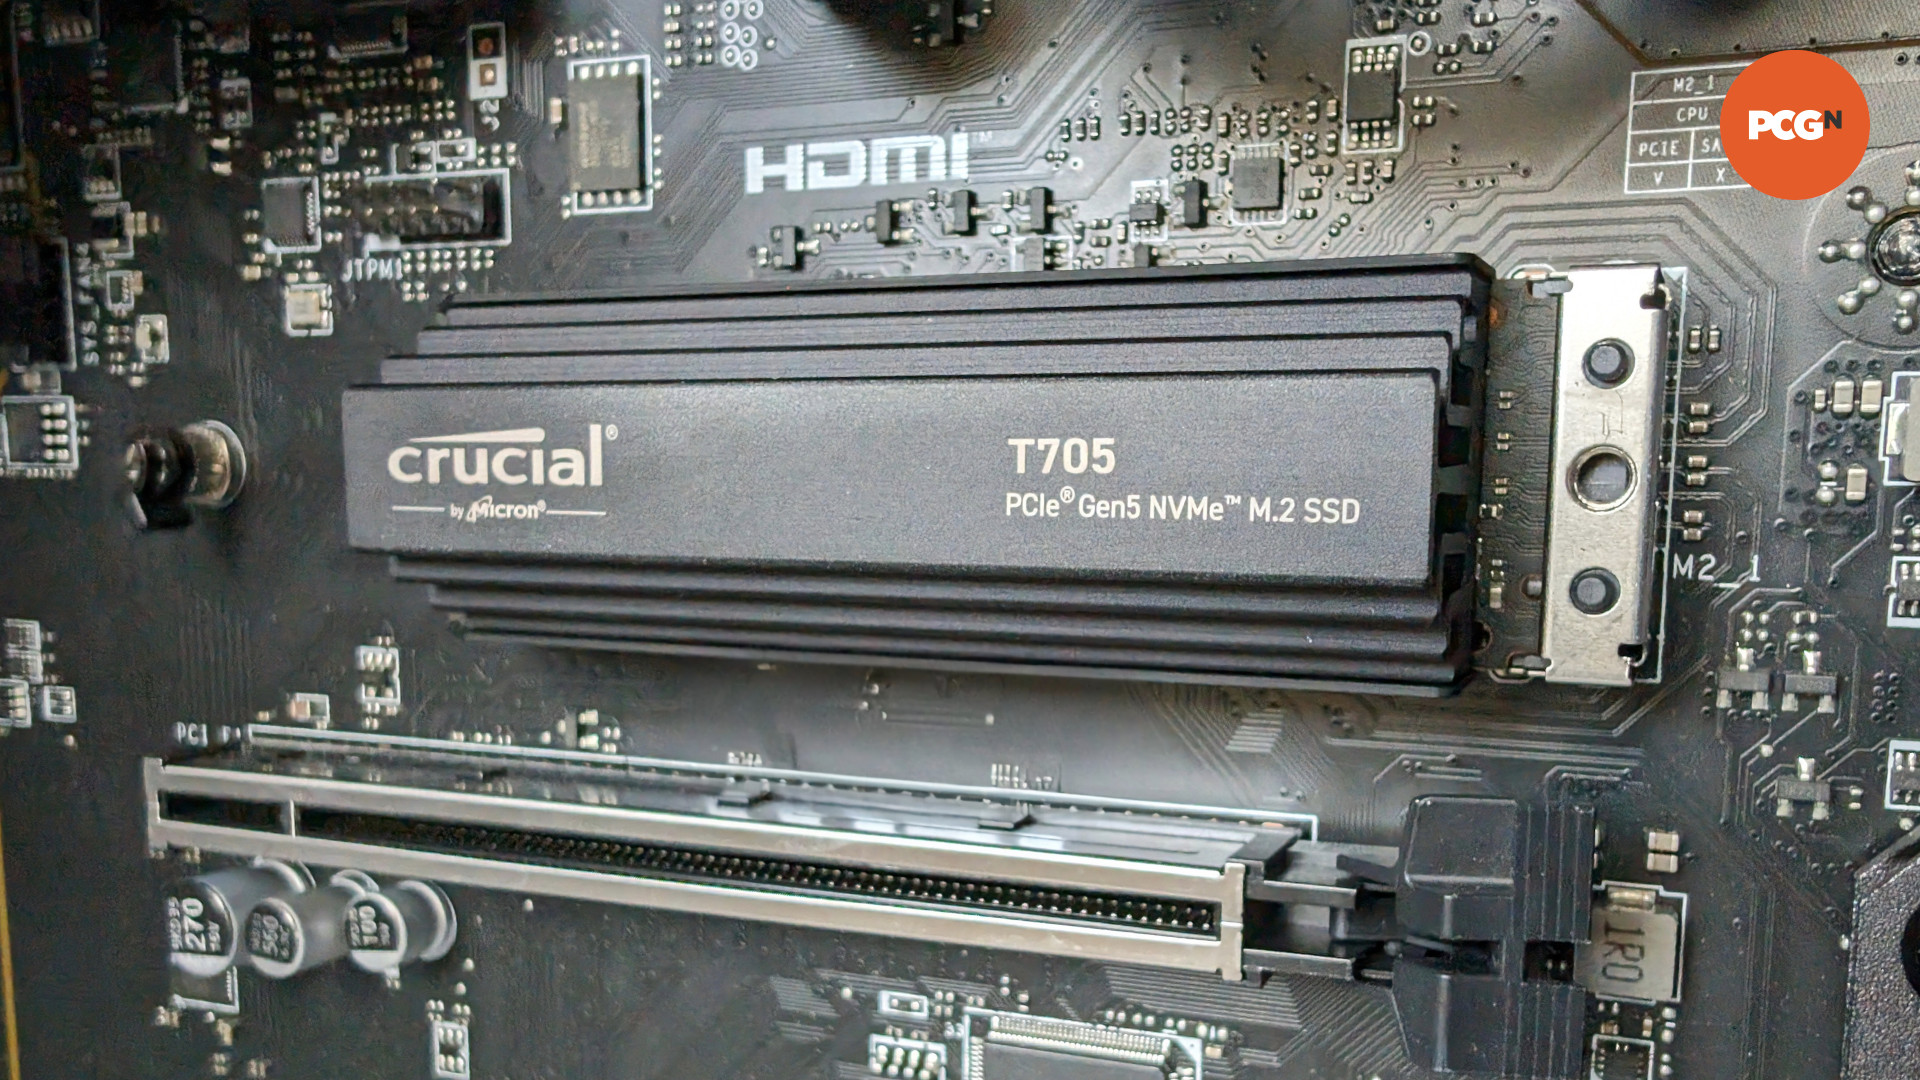 SSD Crucial T705 branché sur une carte mère